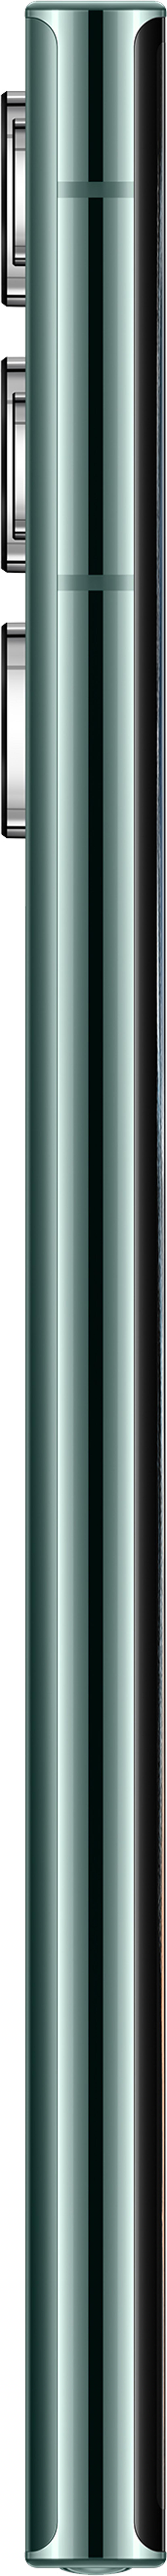 Samsung Galaxy S22 Ultra 256GB Dual-SIM Grön